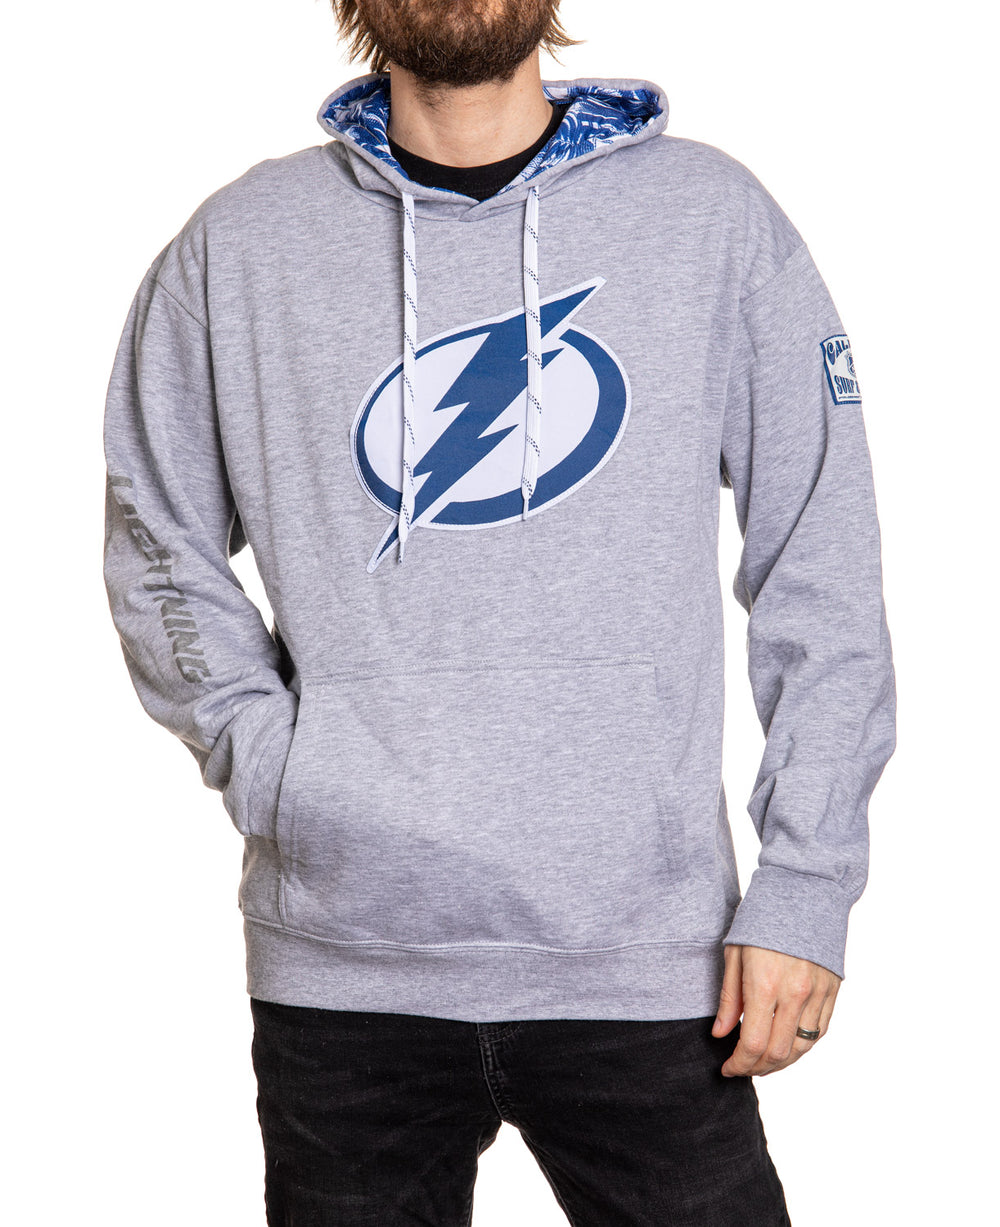 Tampa Bay Lightning Cropped Zip-up Sweatshirt 